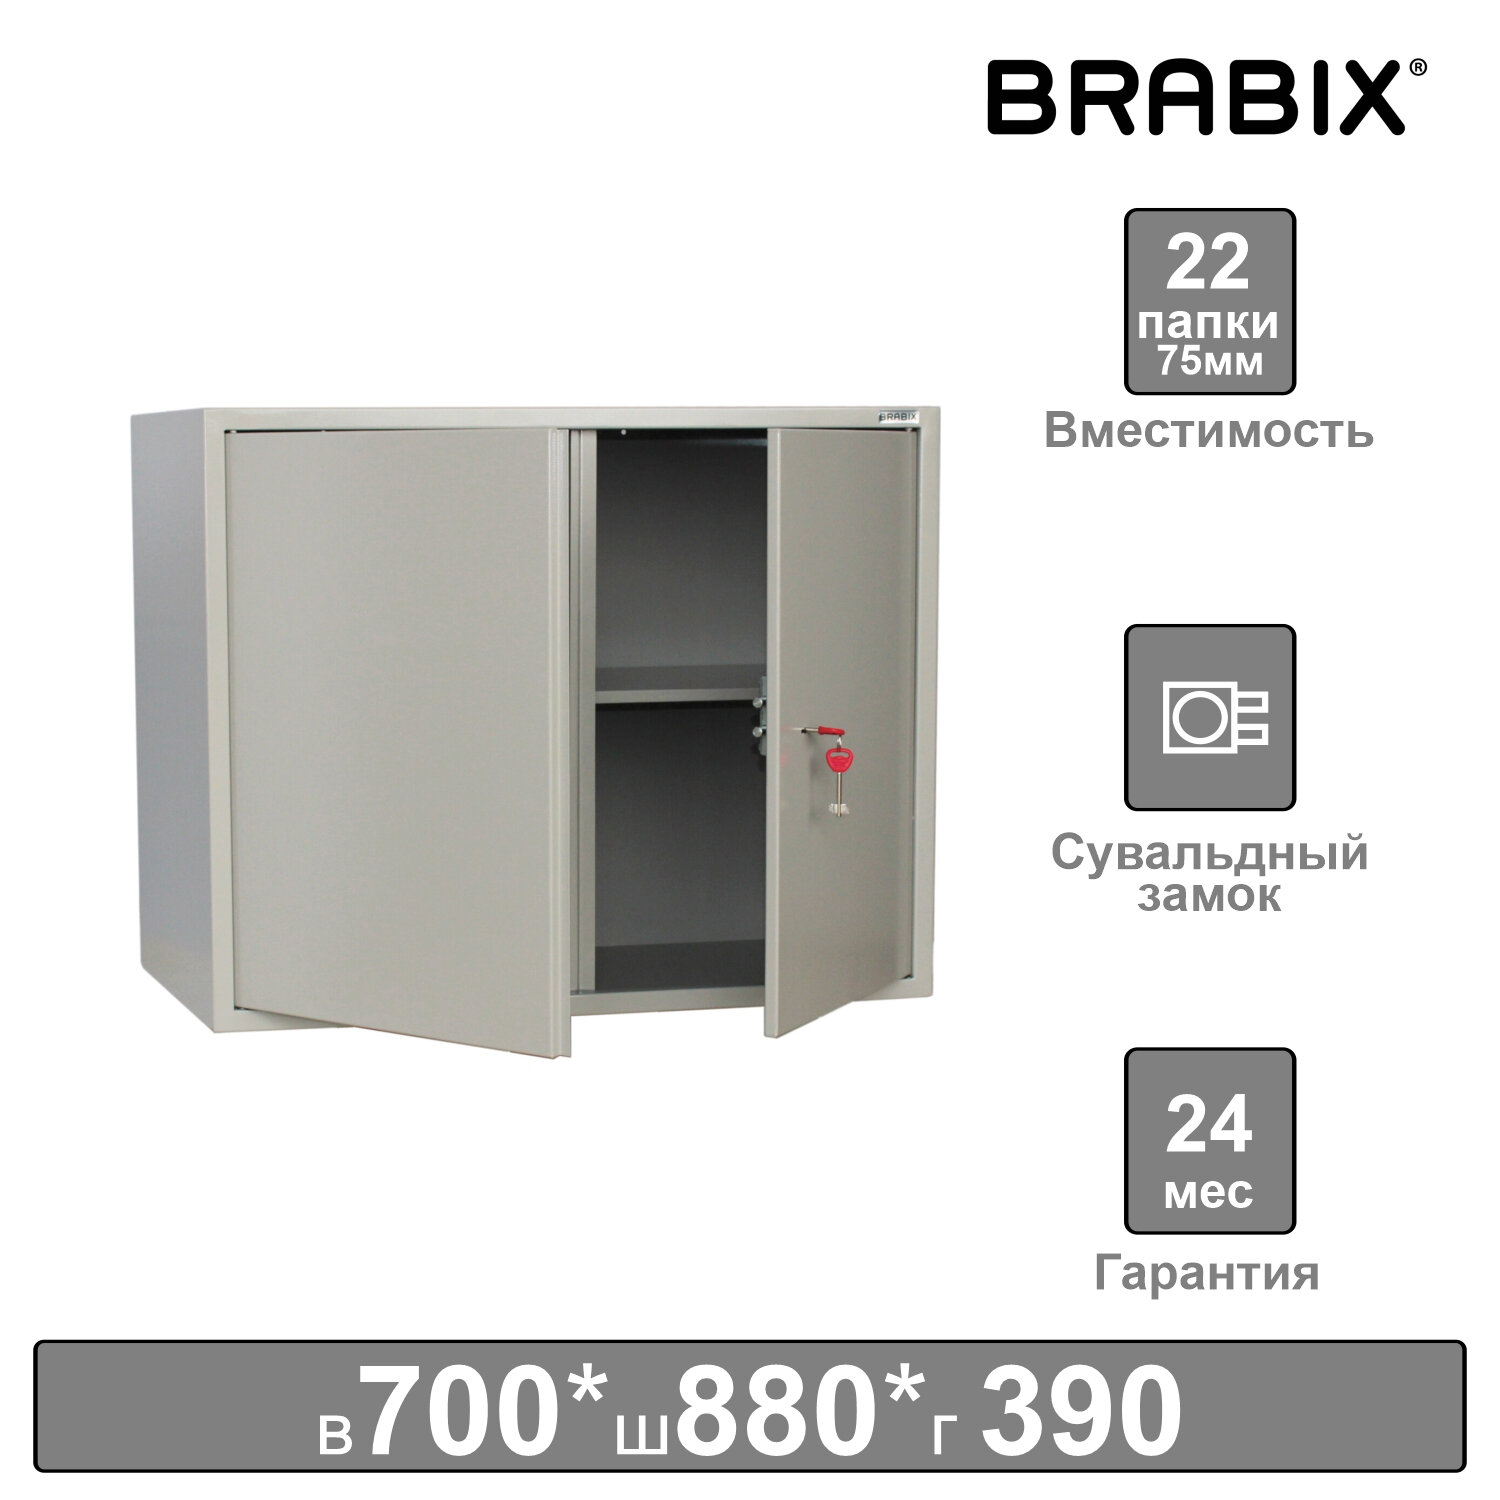 Brabix     () BRABIX KBS-09, 700880390 , 30 , , 291158